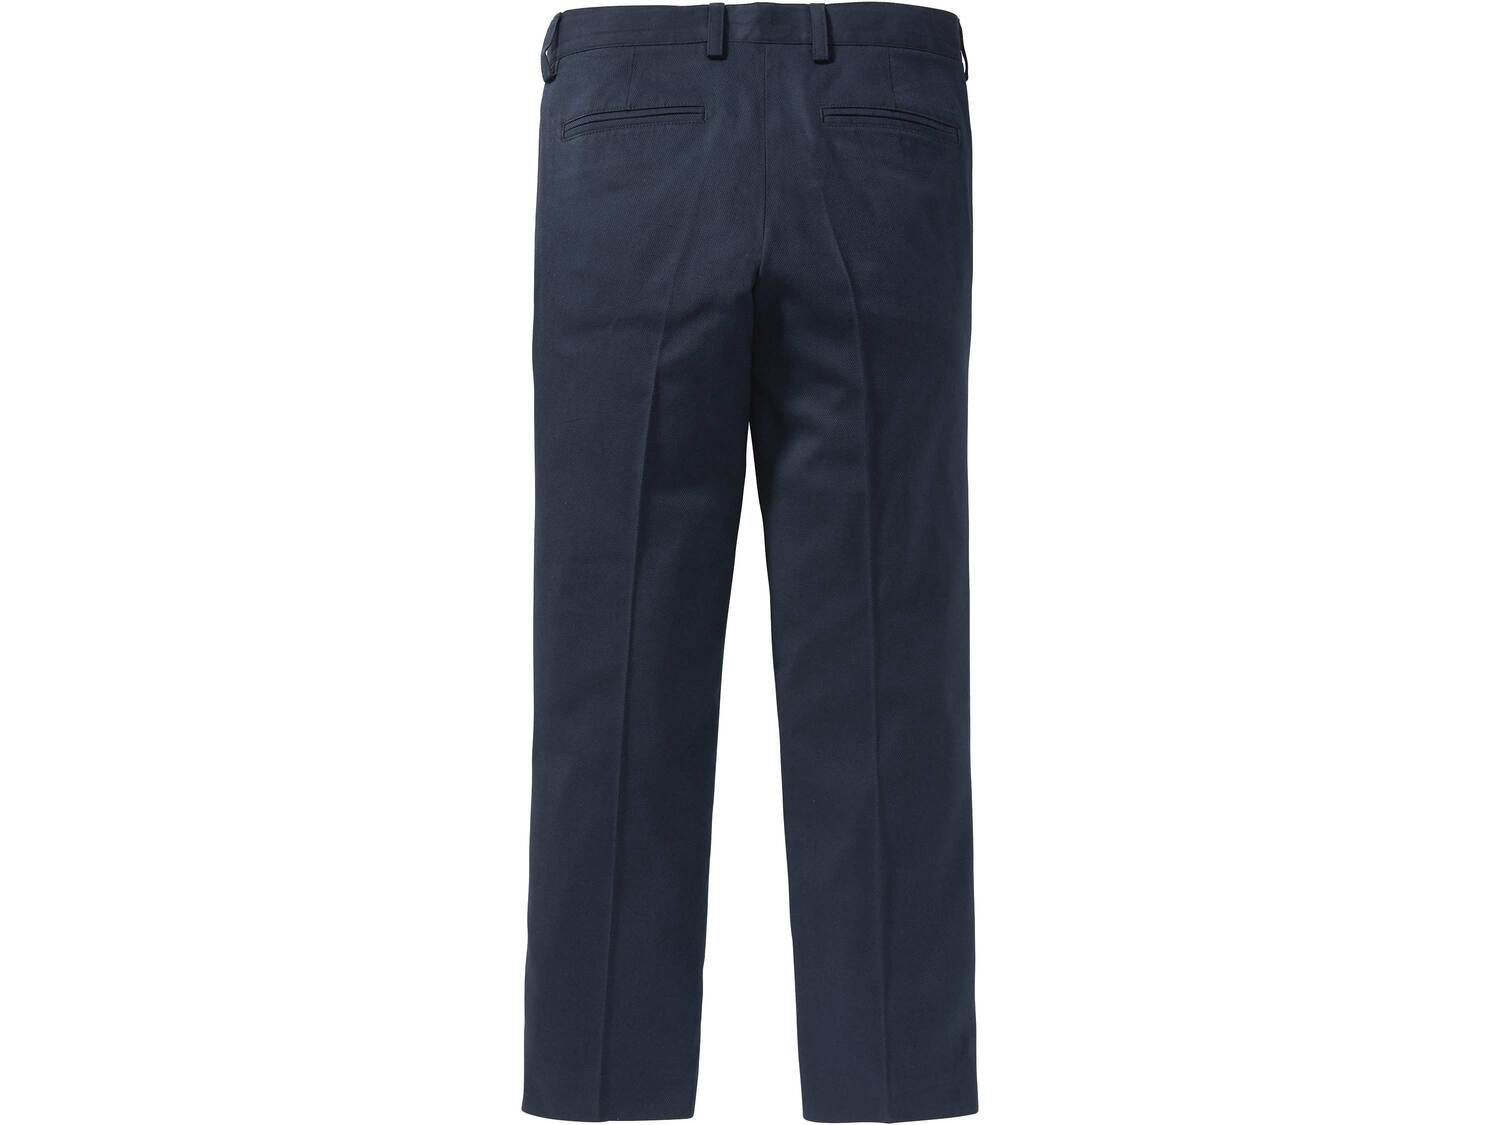 Spodnie garniturowe chłopięce Pepperts, cena 45,00 PLN 
- rozmiary: 122-164
- ...